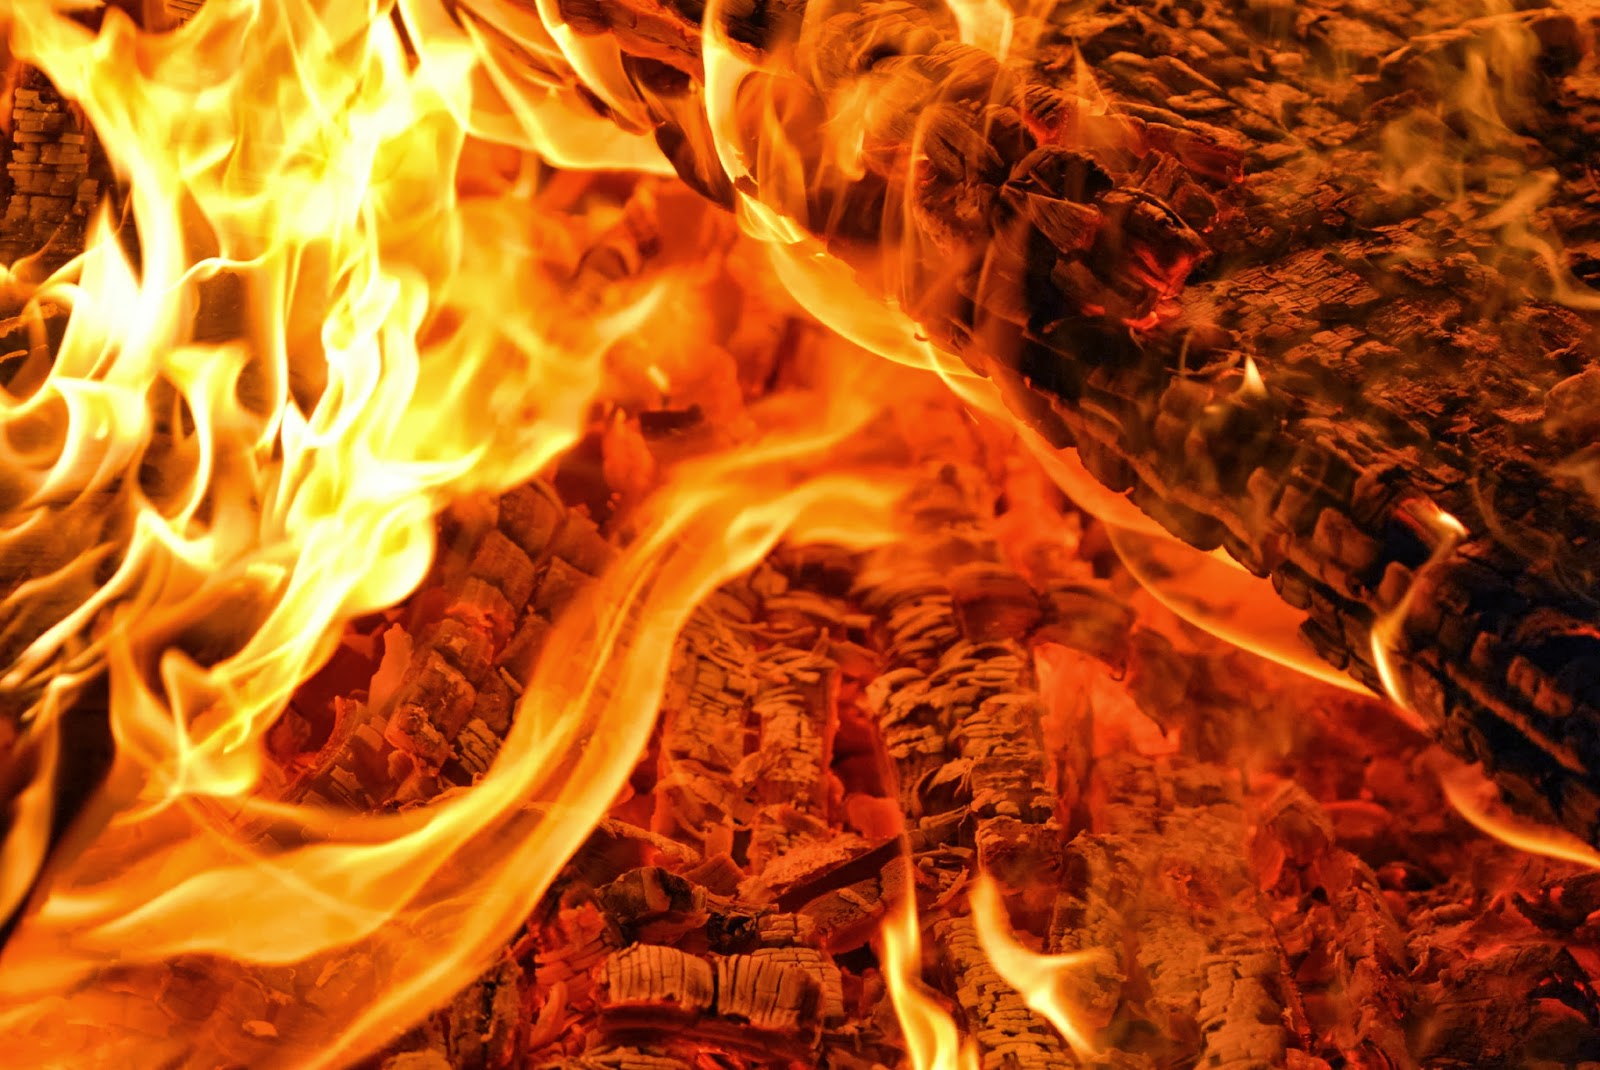 fire wallpaper hd,flame,fire,heat,bonfire,orange